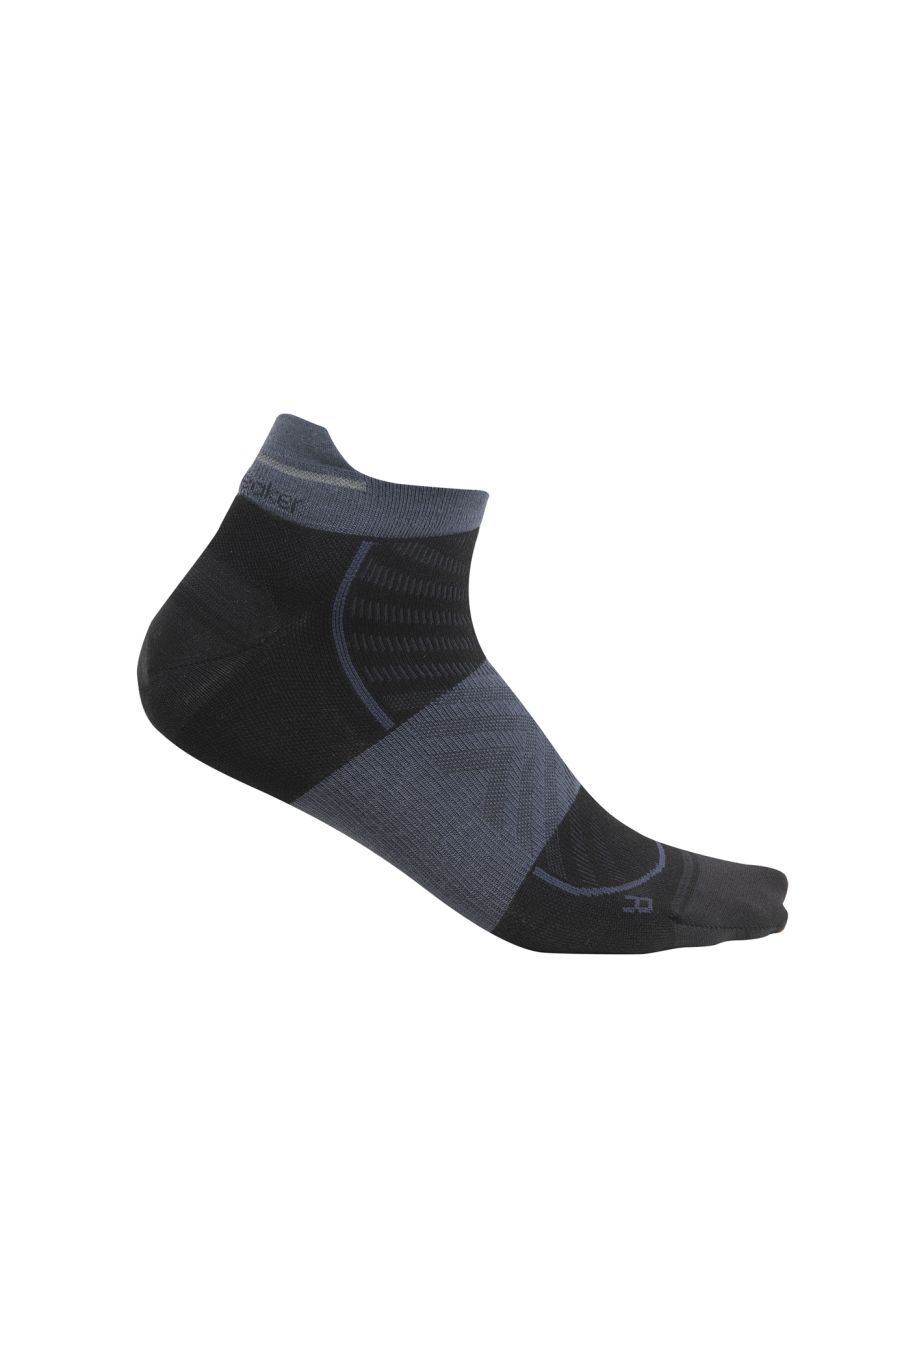 Pánské merino ponožky ICEBREAKER Mens Merino Run+ Ultralight Micro, Black/Graphite velikost: 44,5-46,5 (L)